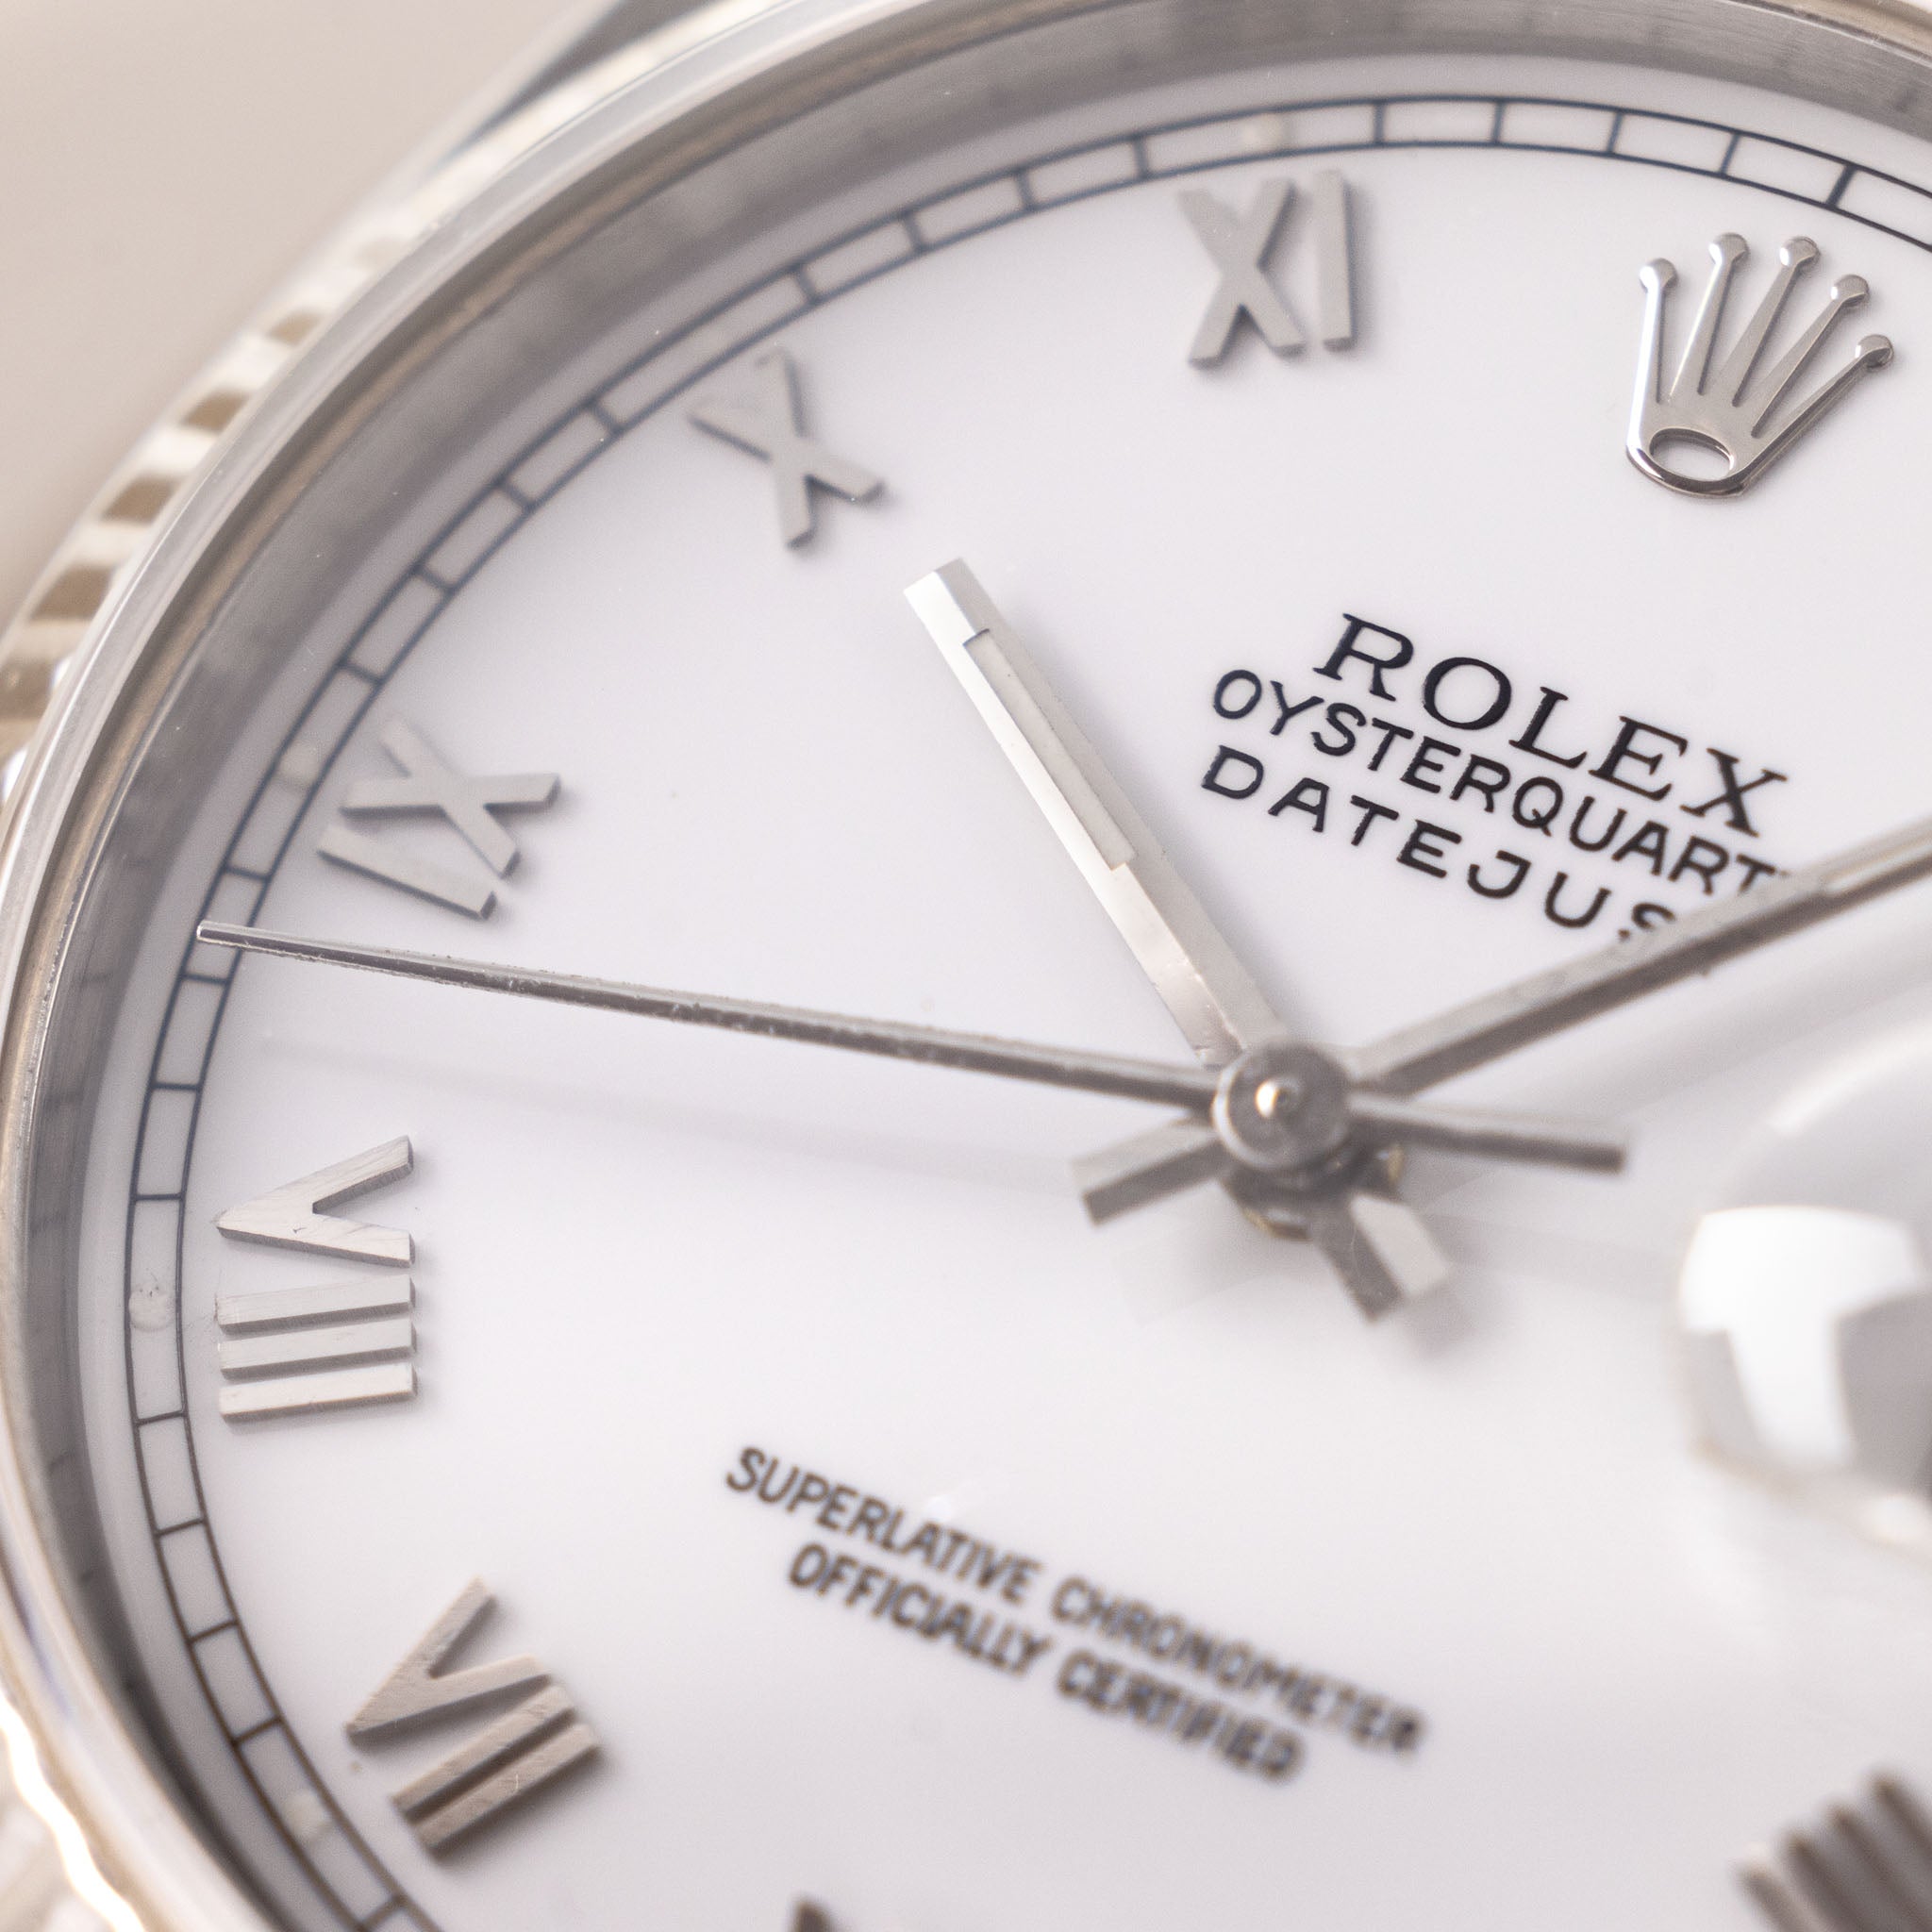 Rolex Oysterquartz Datejust Porcelain Dial Ref 17014